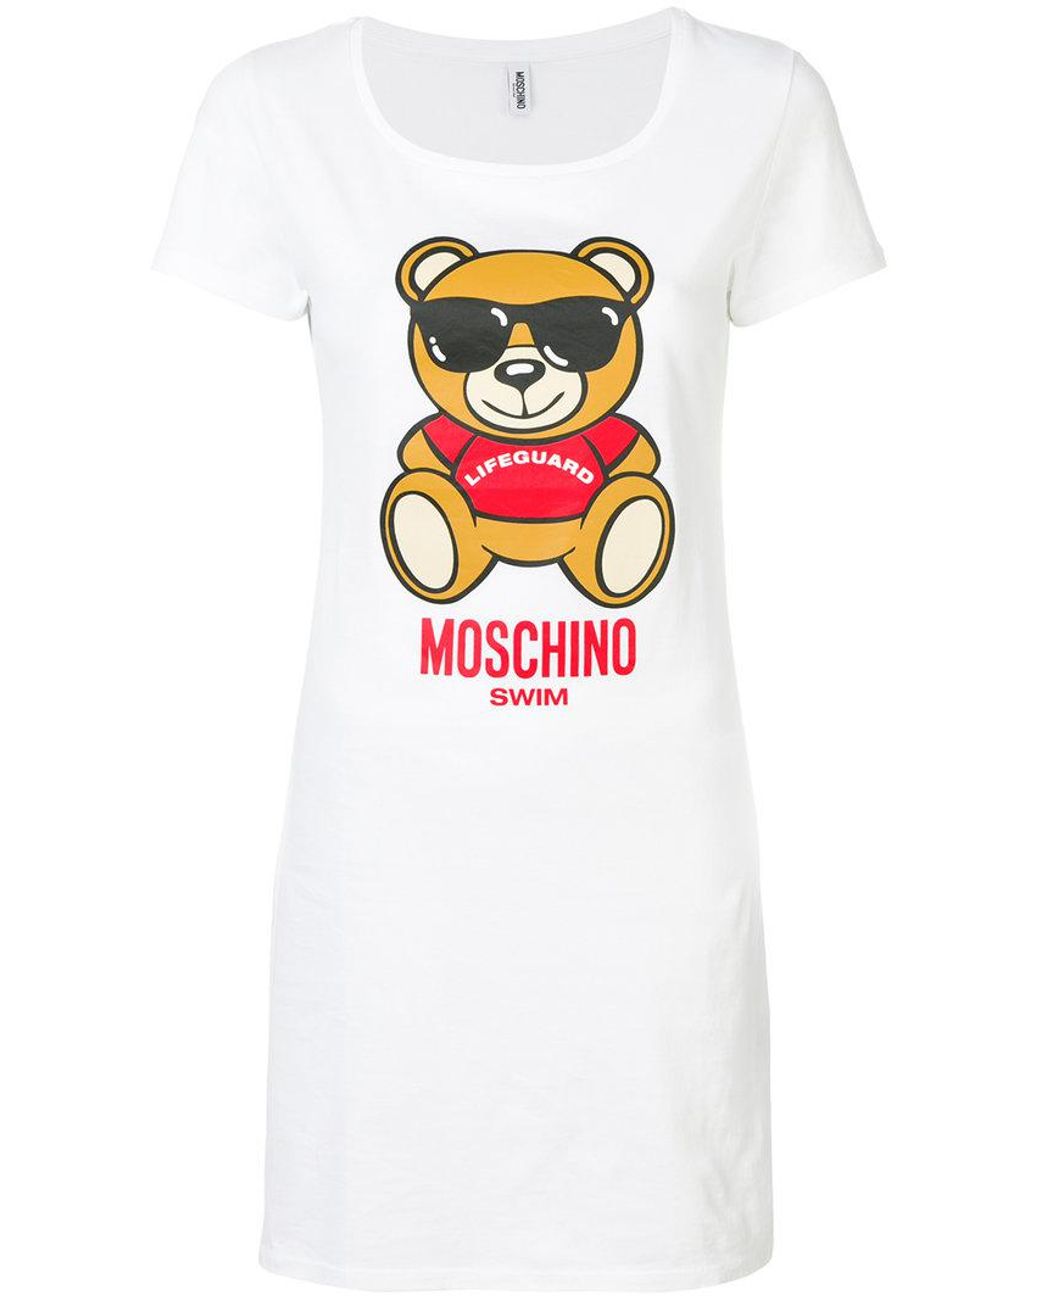 Moschino Swim T-shirt Dress in White | Lyst Australia